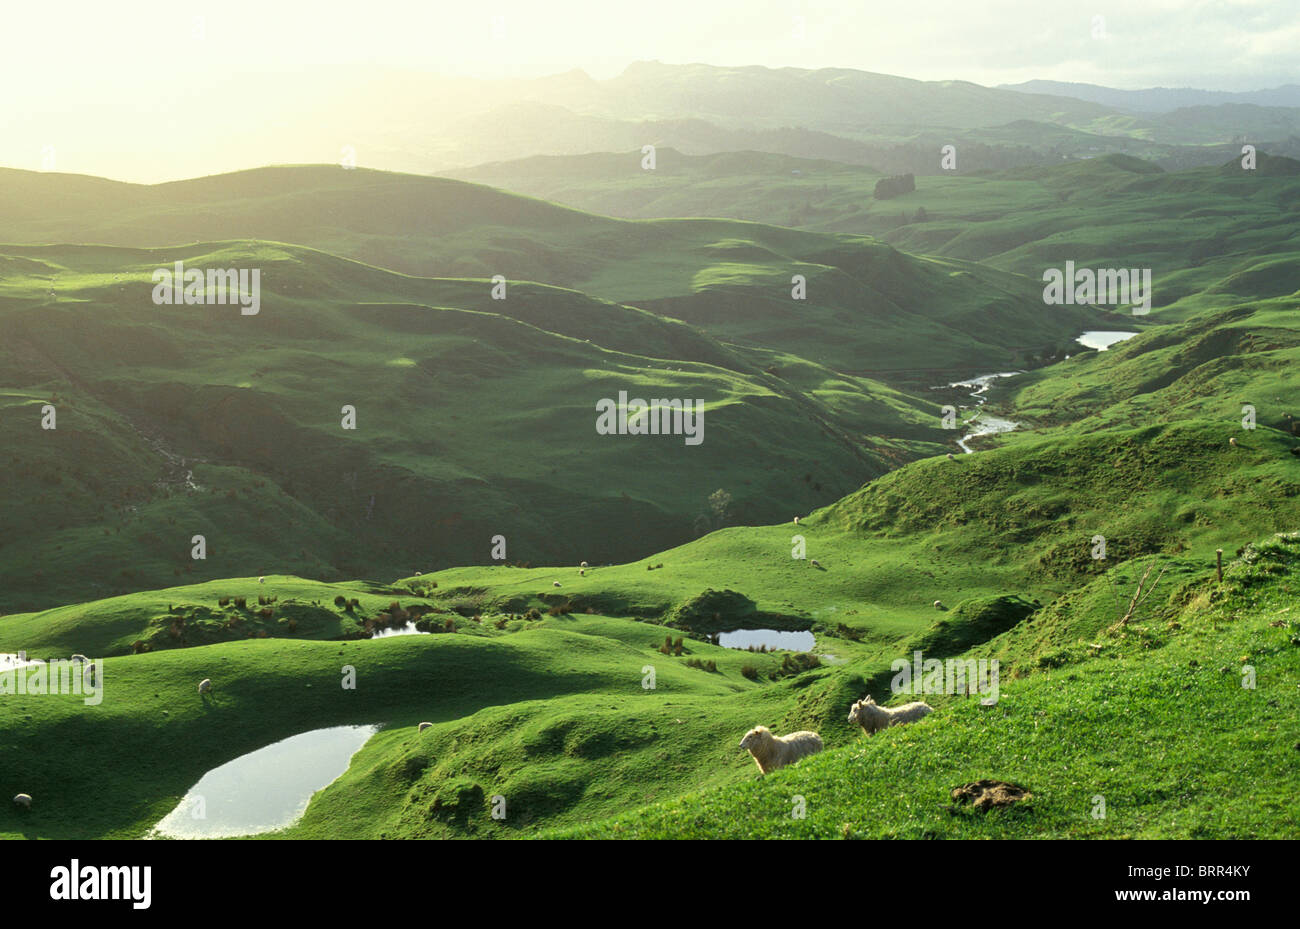 Ländliches Motiv mit Schafbeweidung am grünen Hügel Stockfoto